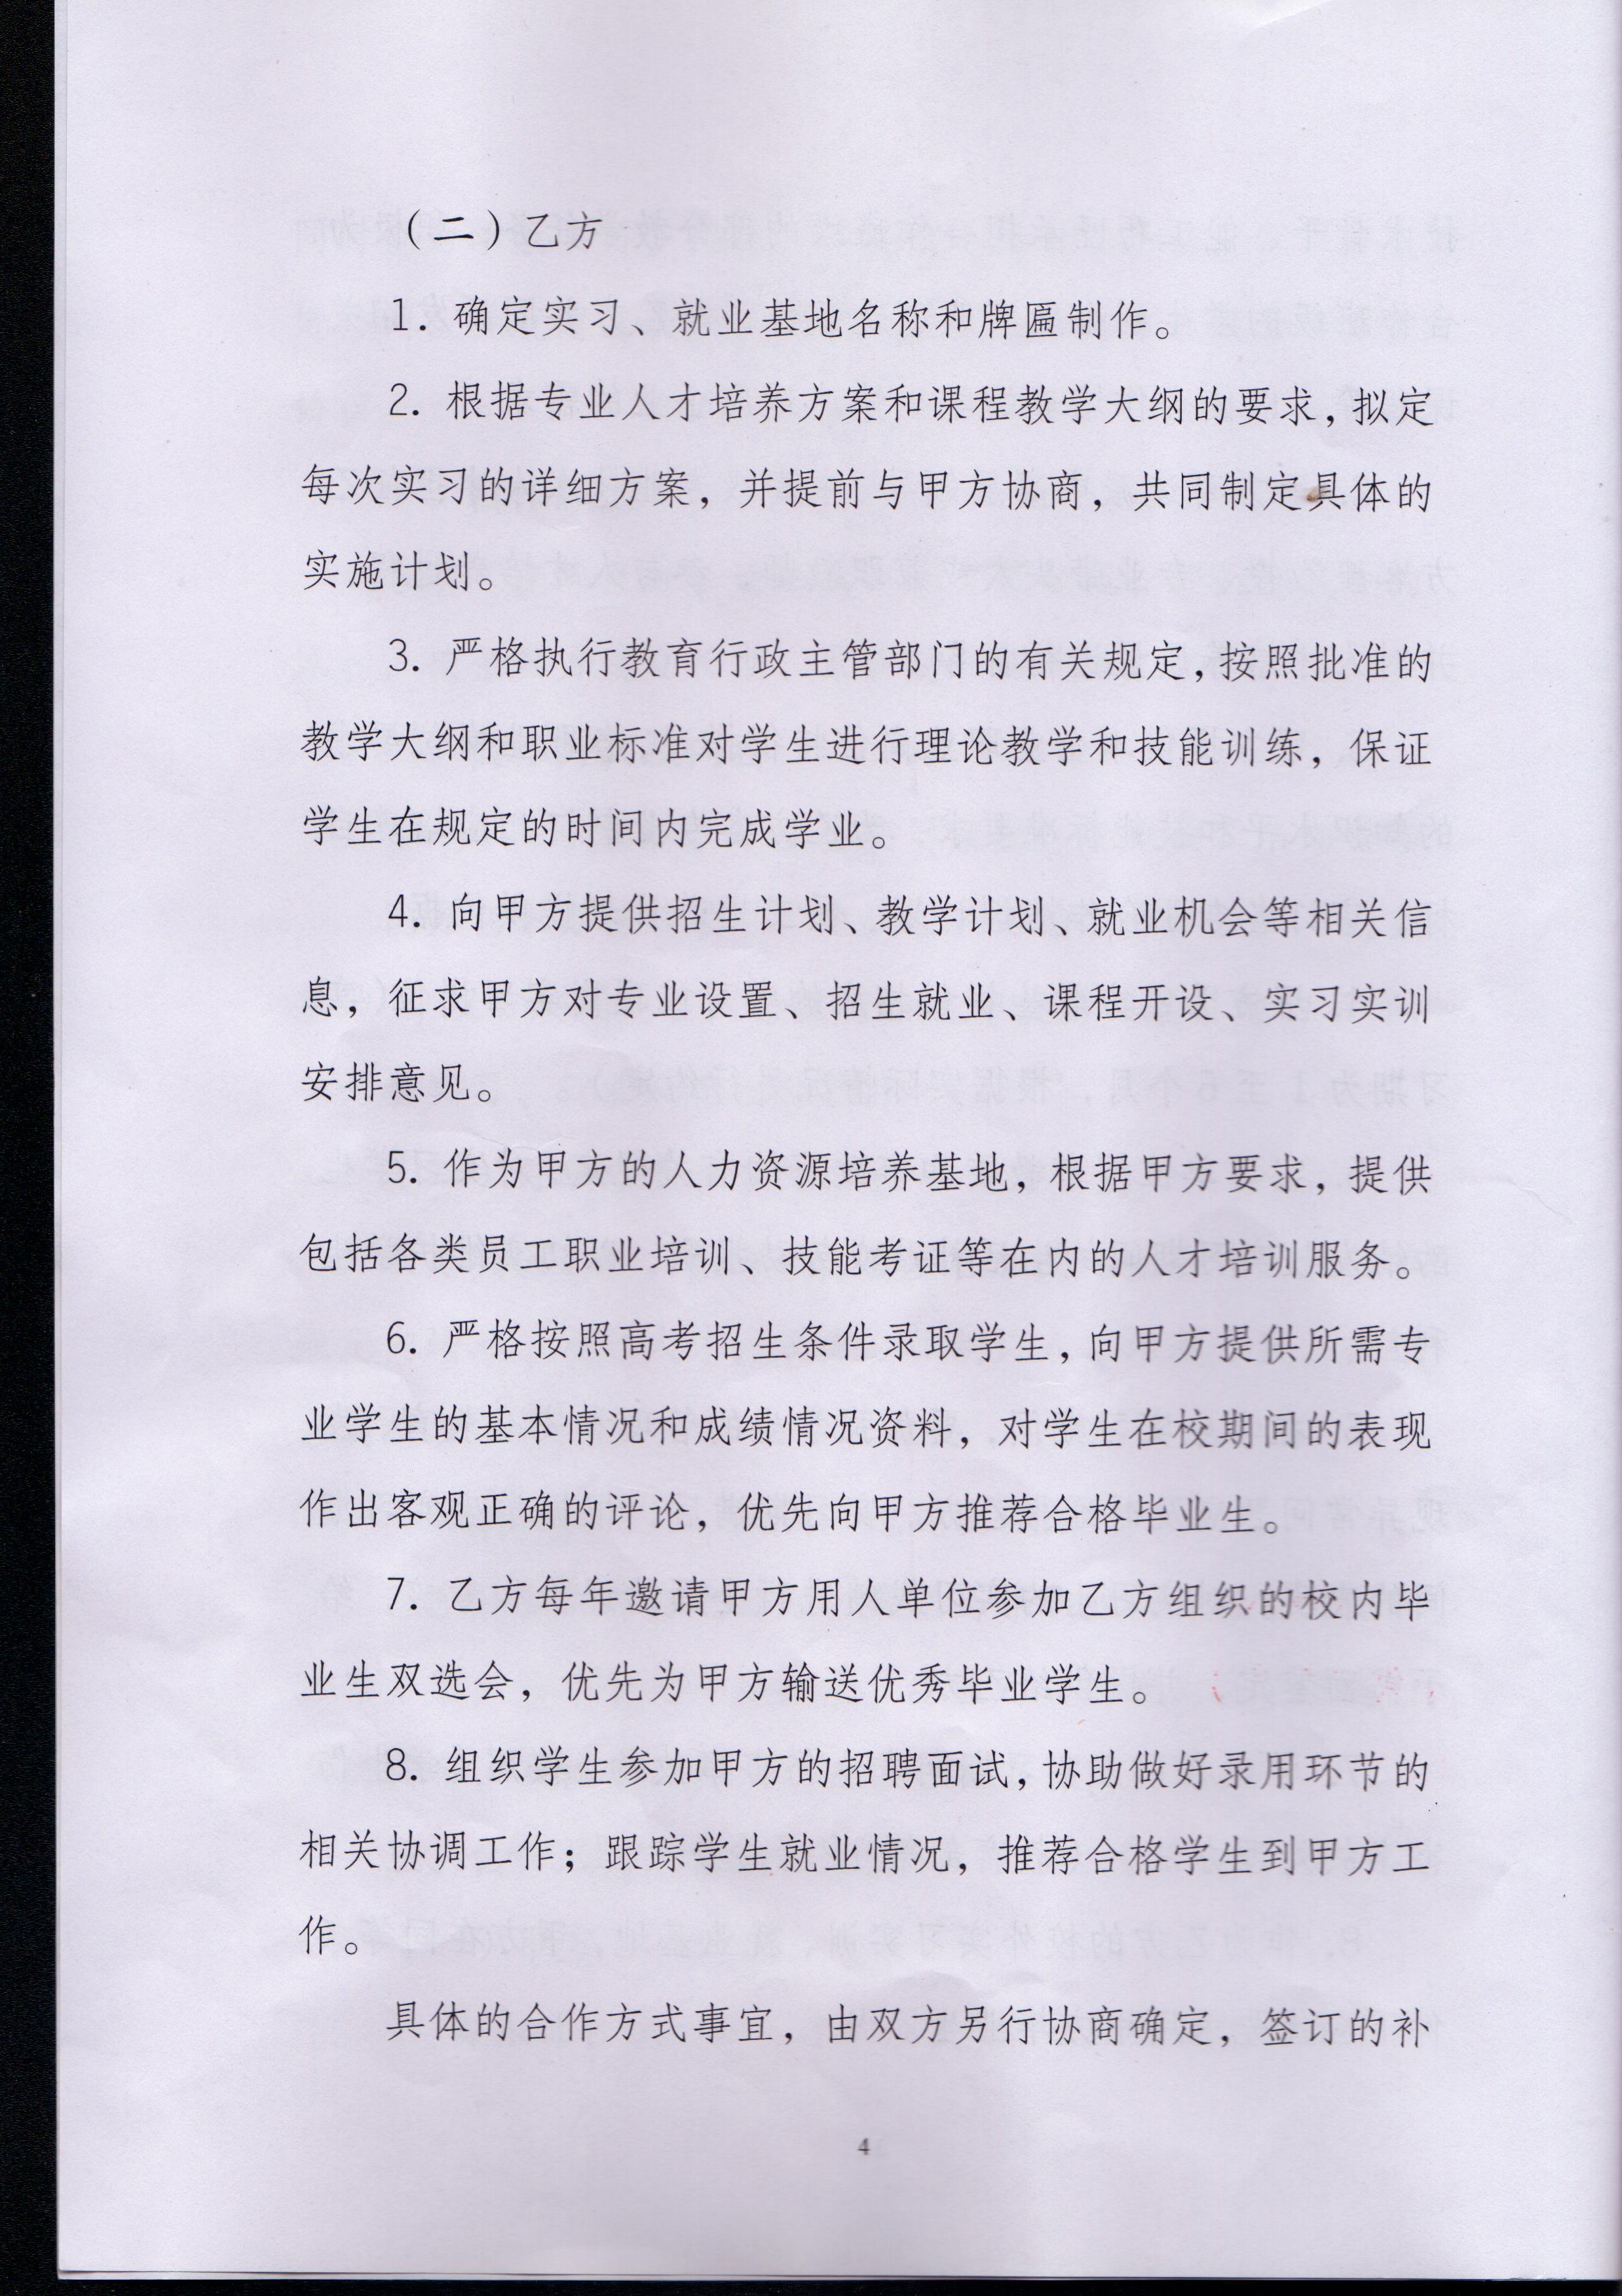 与上海佳吉快运有限公司重庆分公司校企合作框架书